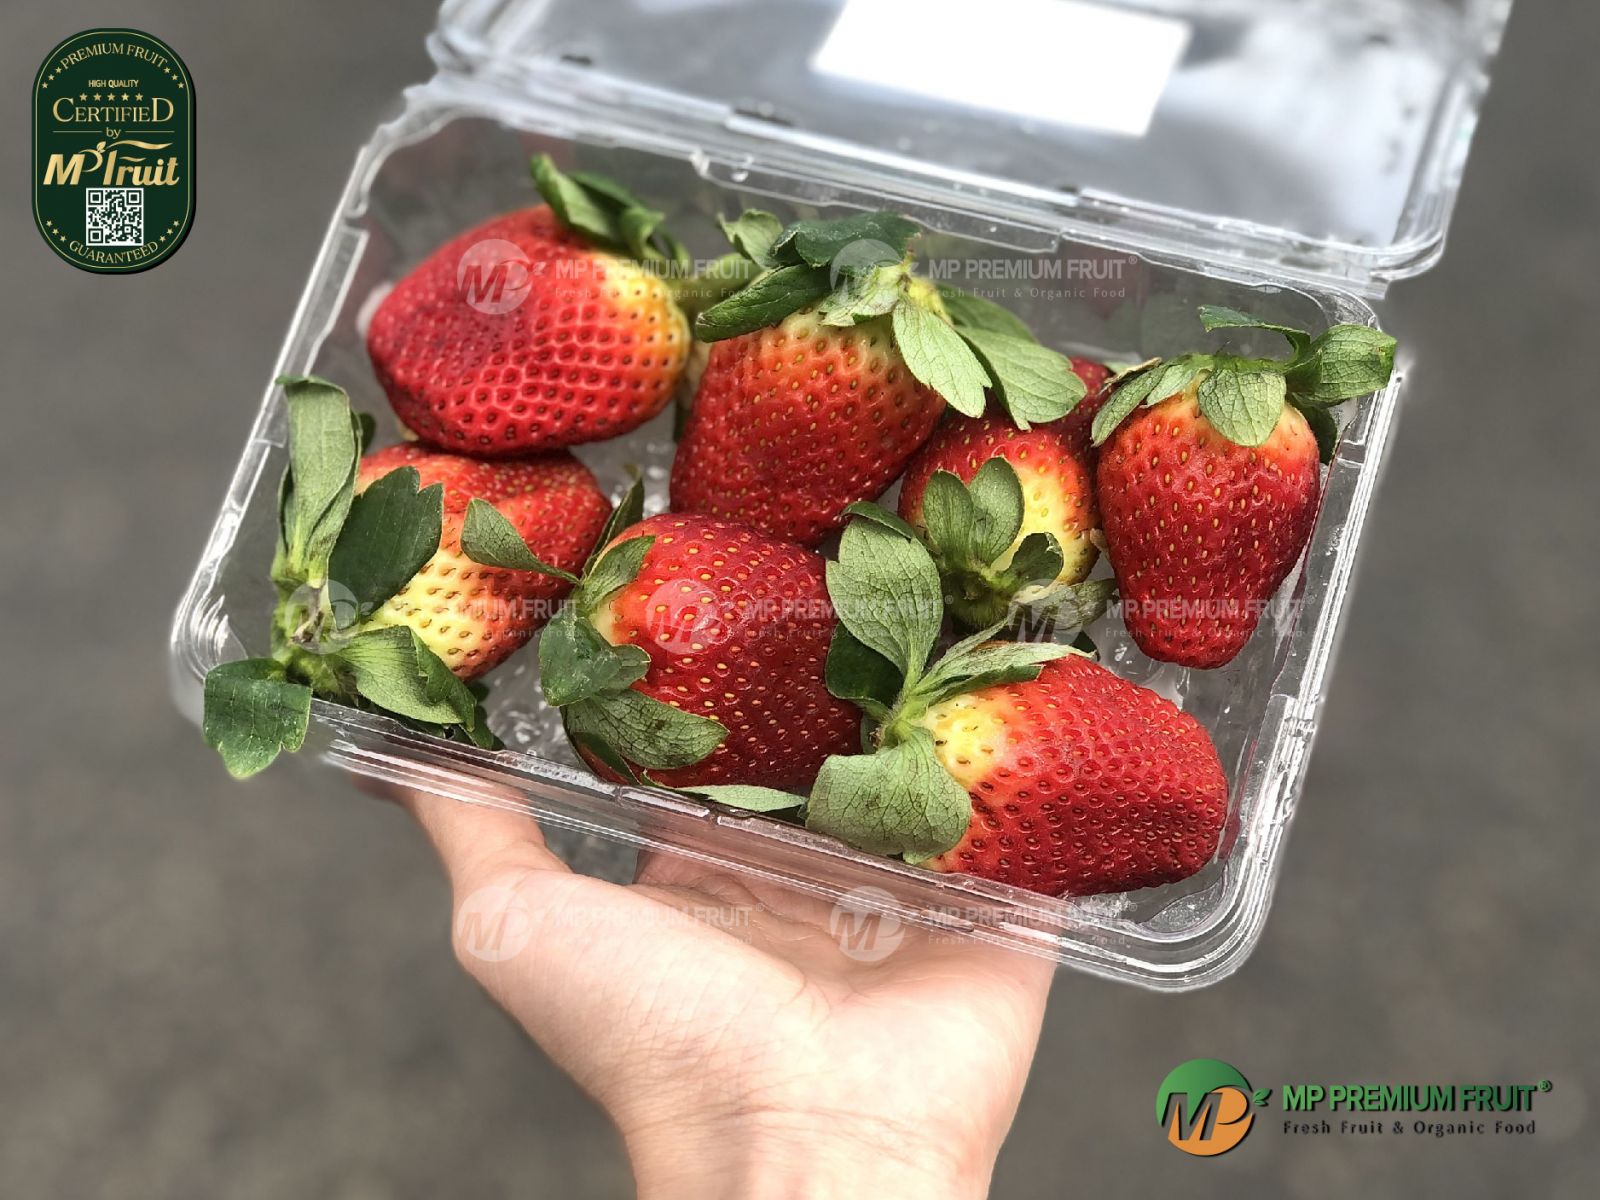 Dâu Tây Úc | N&J Strawberries Hộp 250g tại MP Fruit